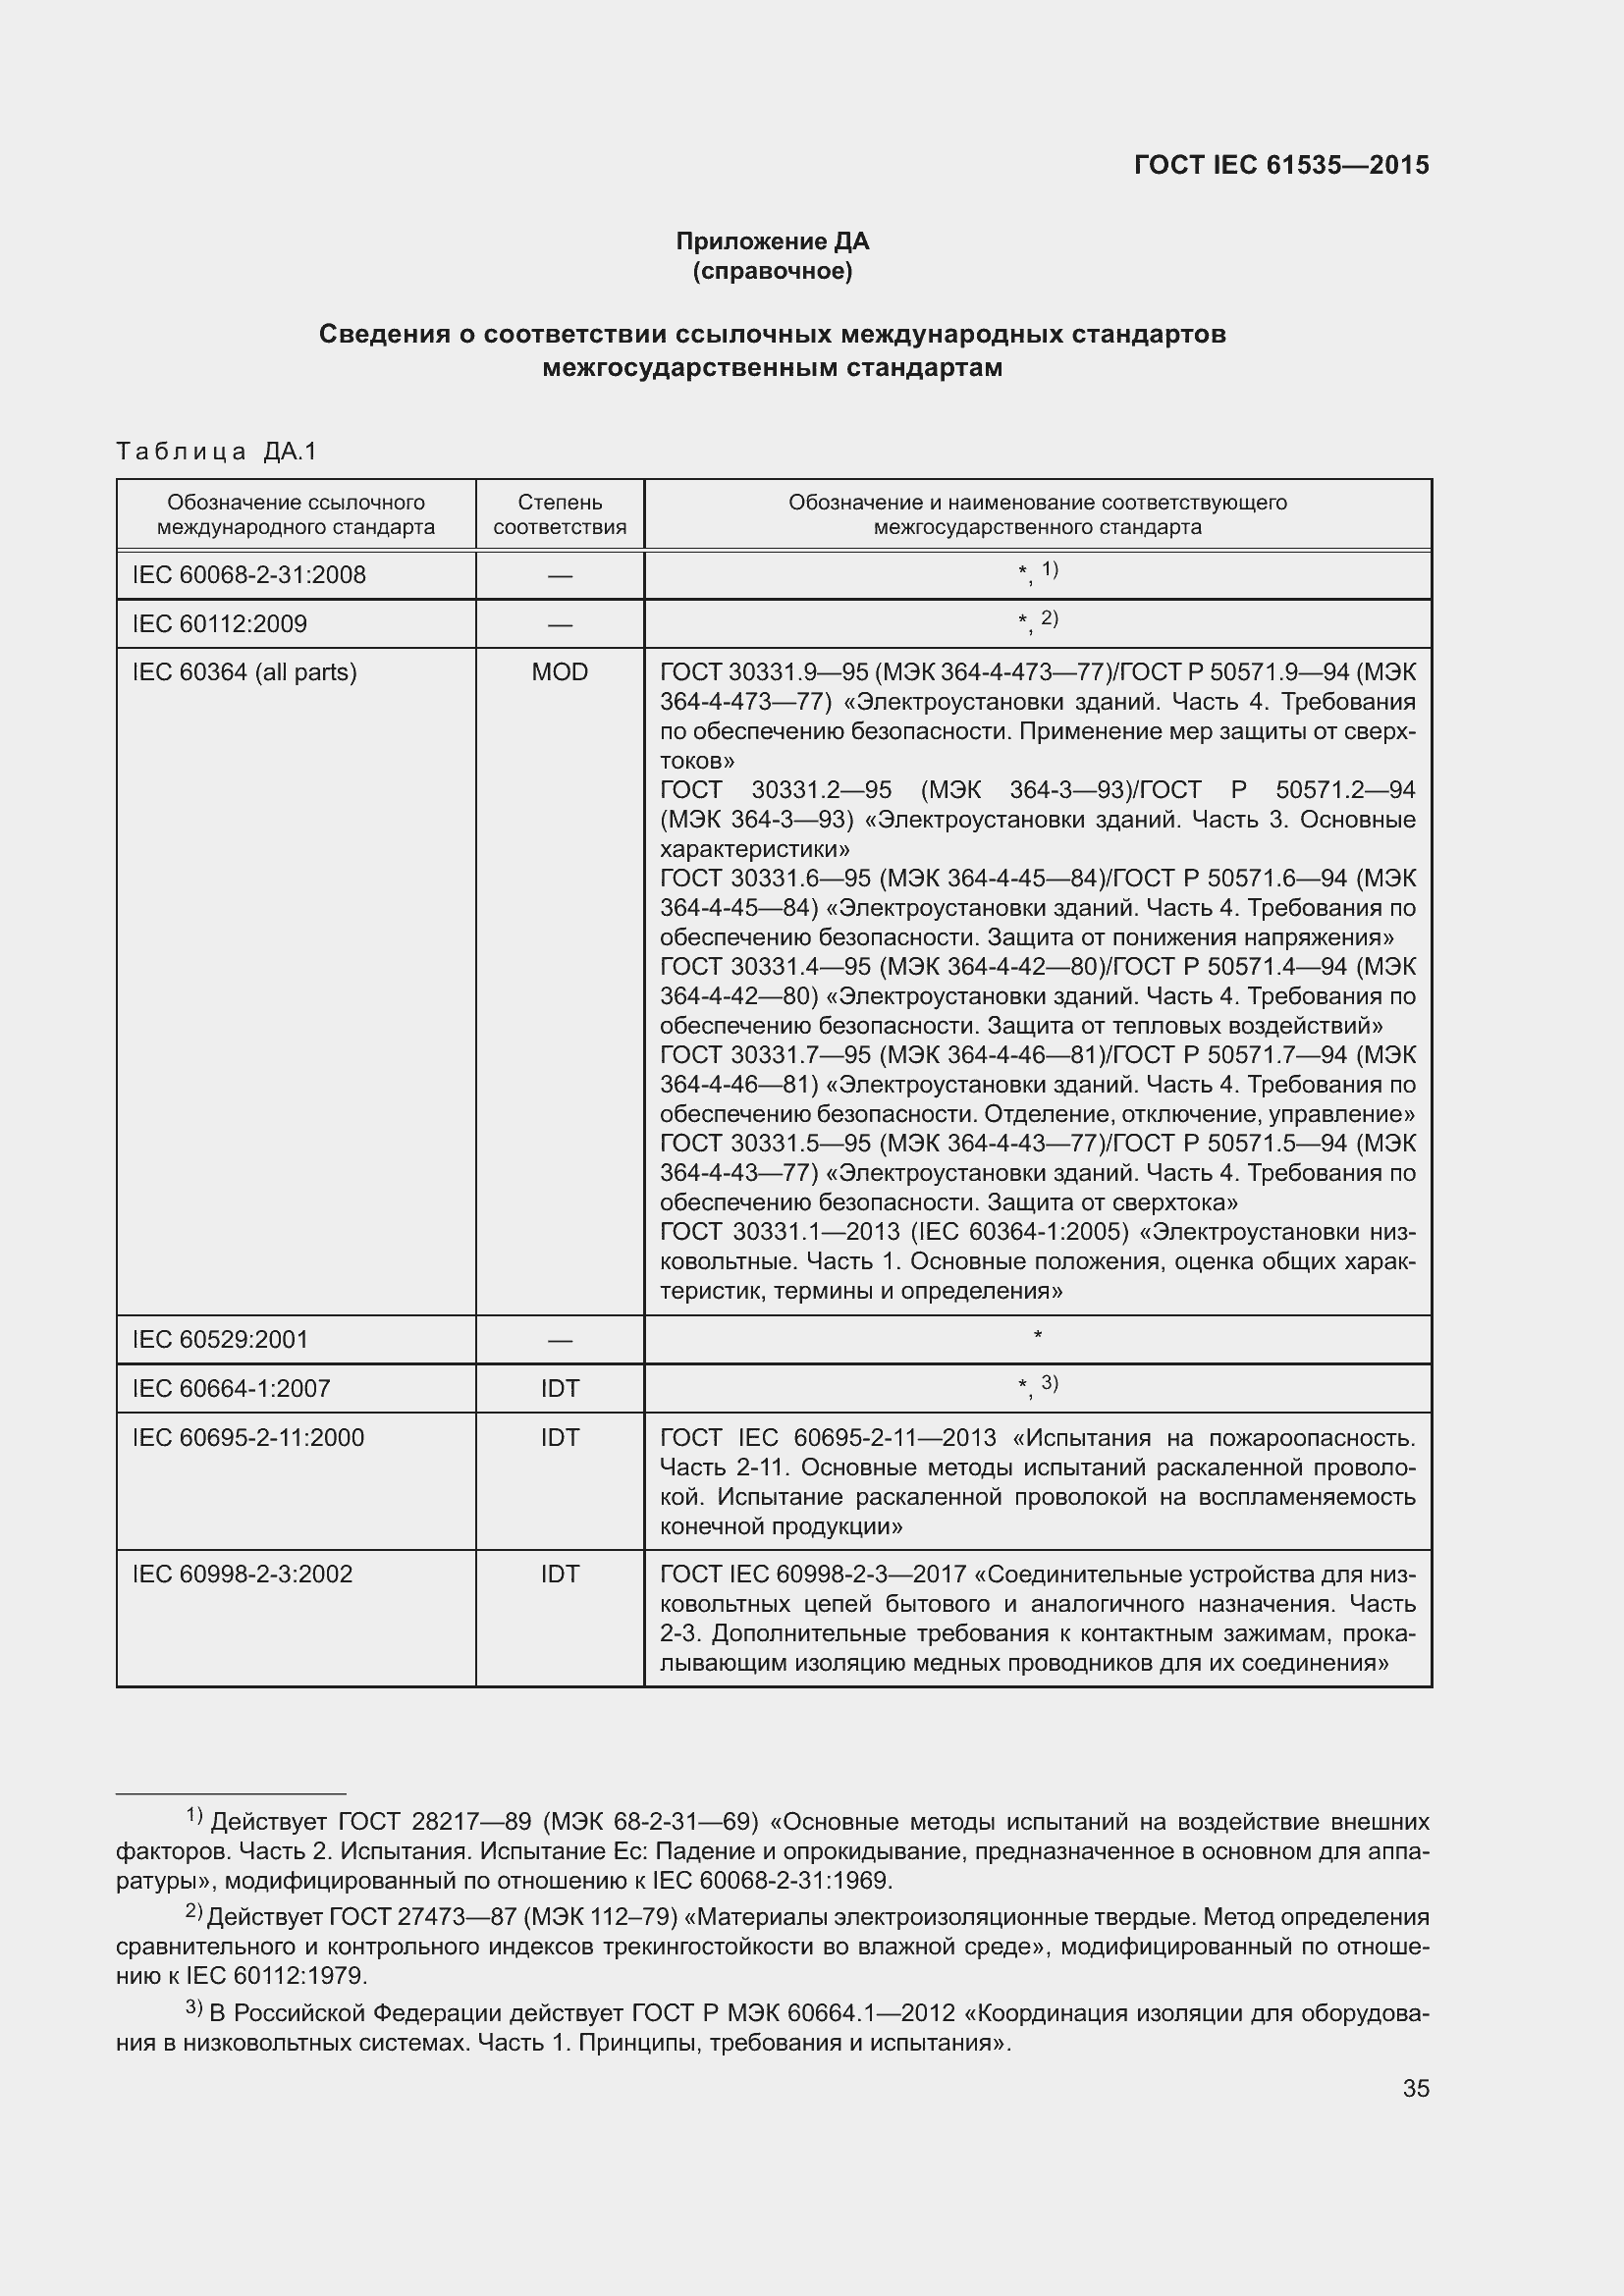  IEC 61535-2015.  41